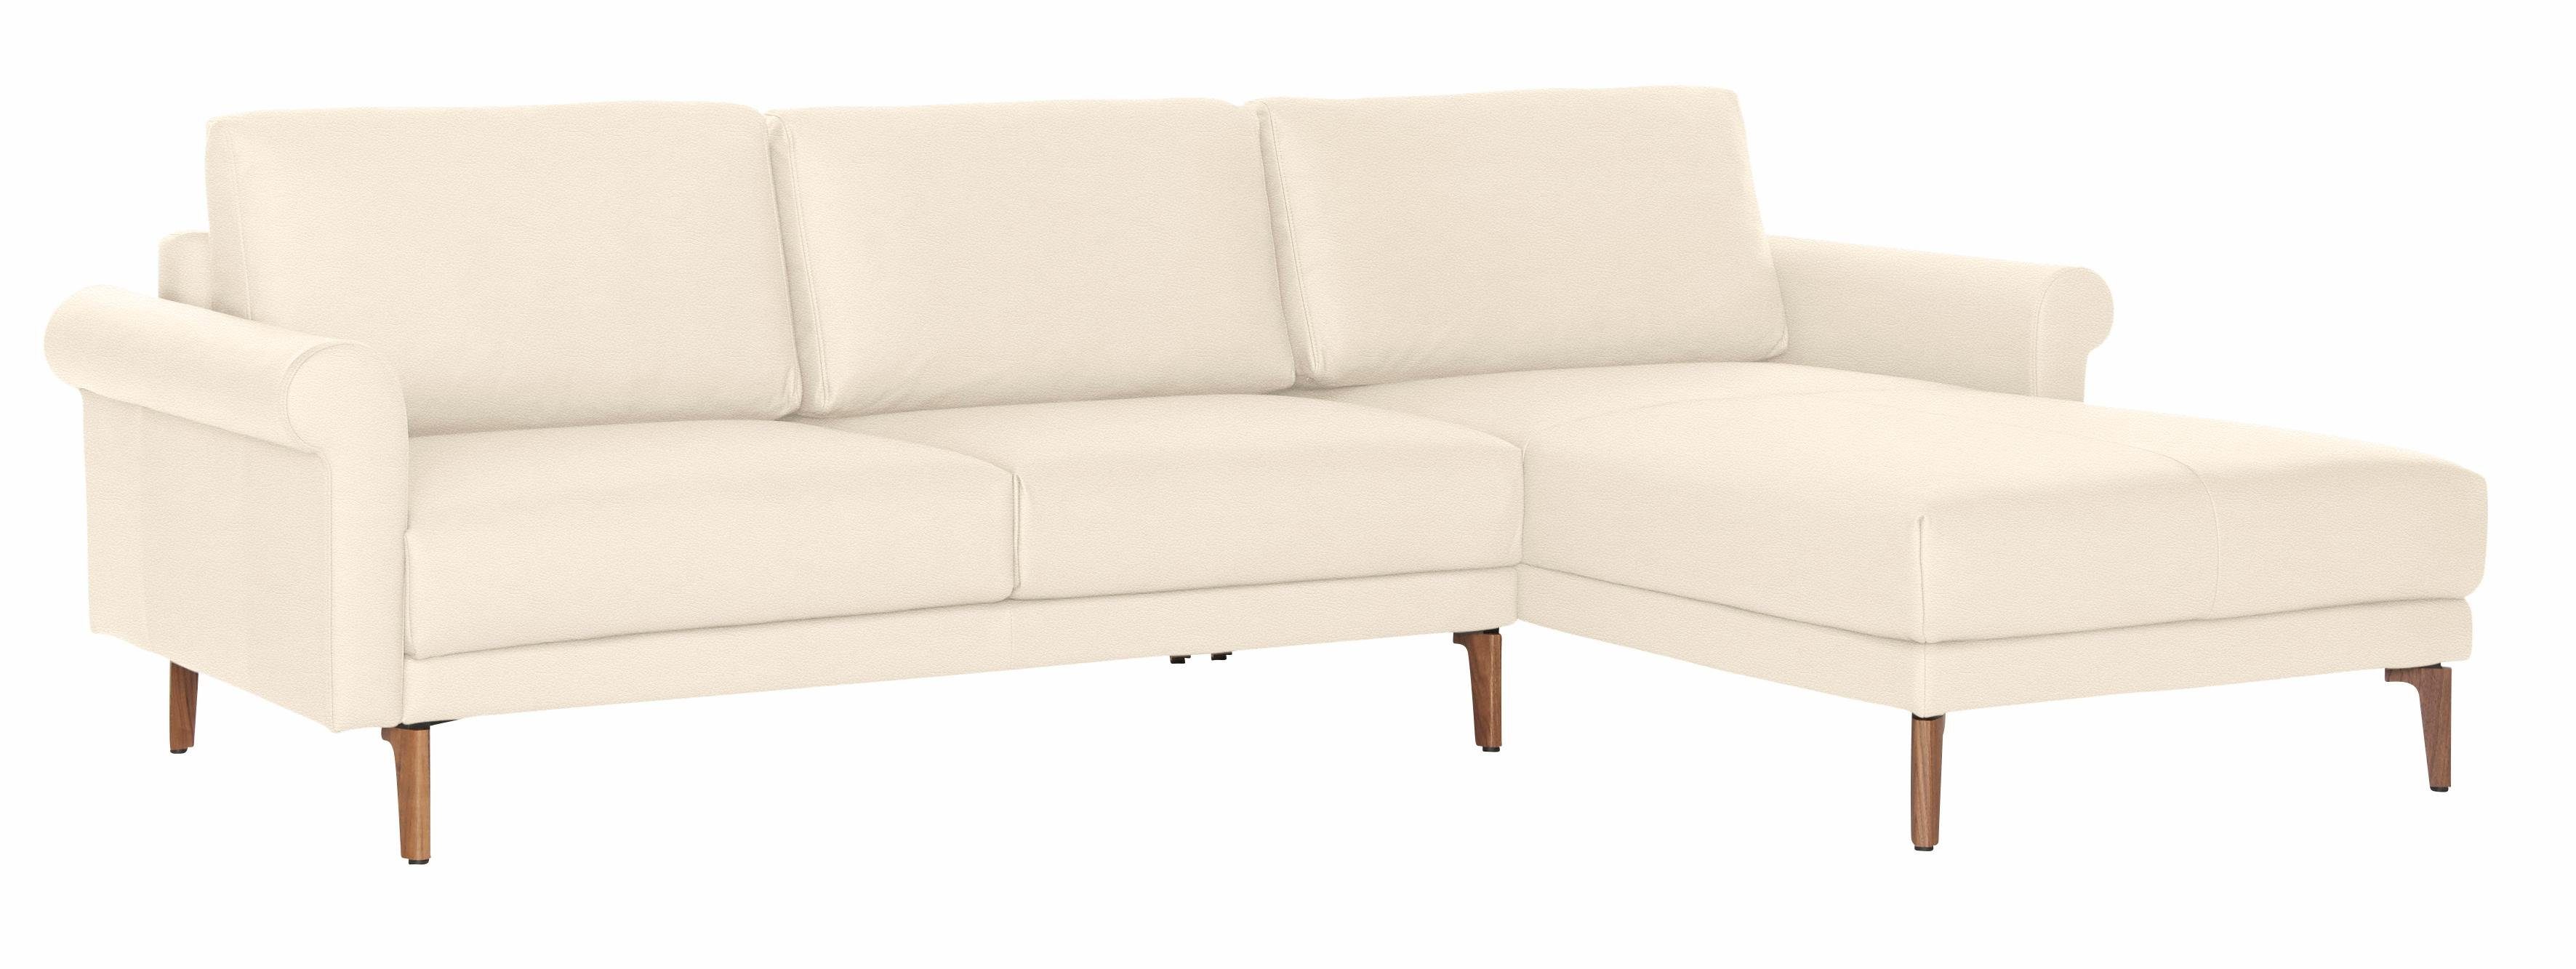 Armlehne sofa modern Ecksofa Nussbaum hs.450, hülsta Breite Fuß 282 cm, Schnecke Landhaus,